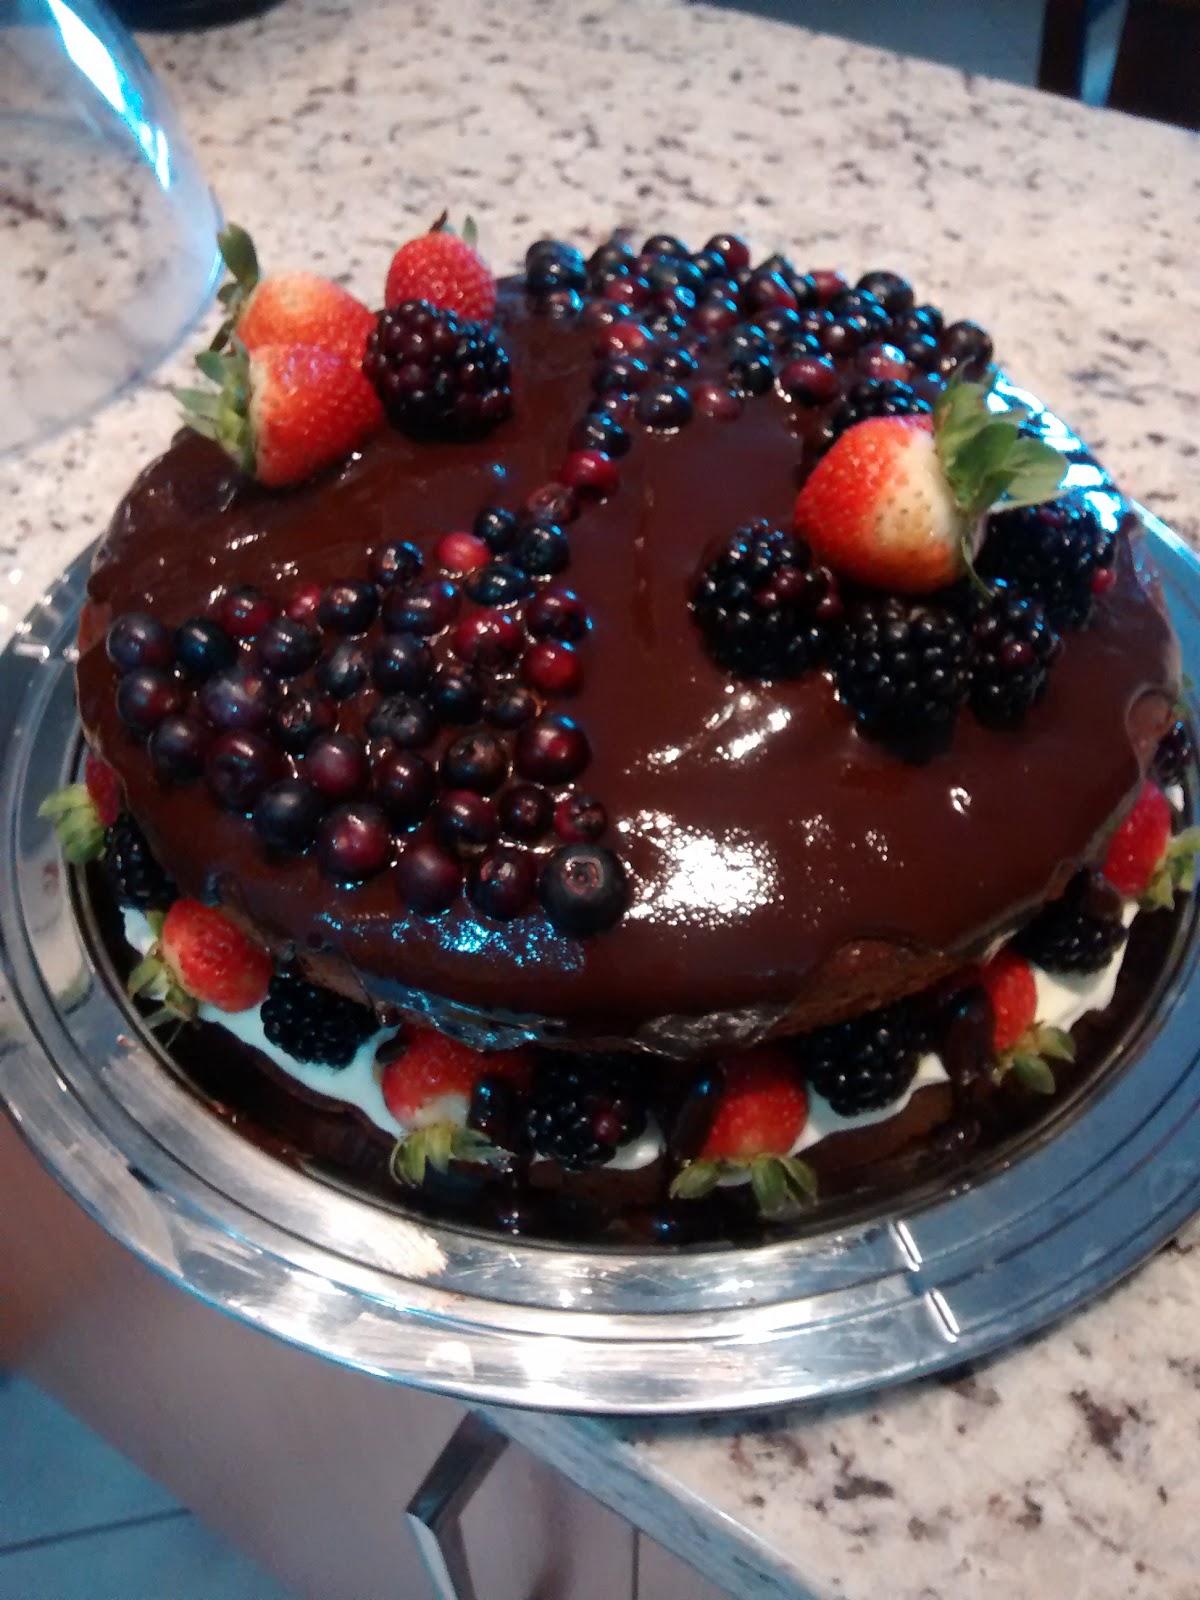 Naked Cake de Chocolate com Frutas Vermelhas